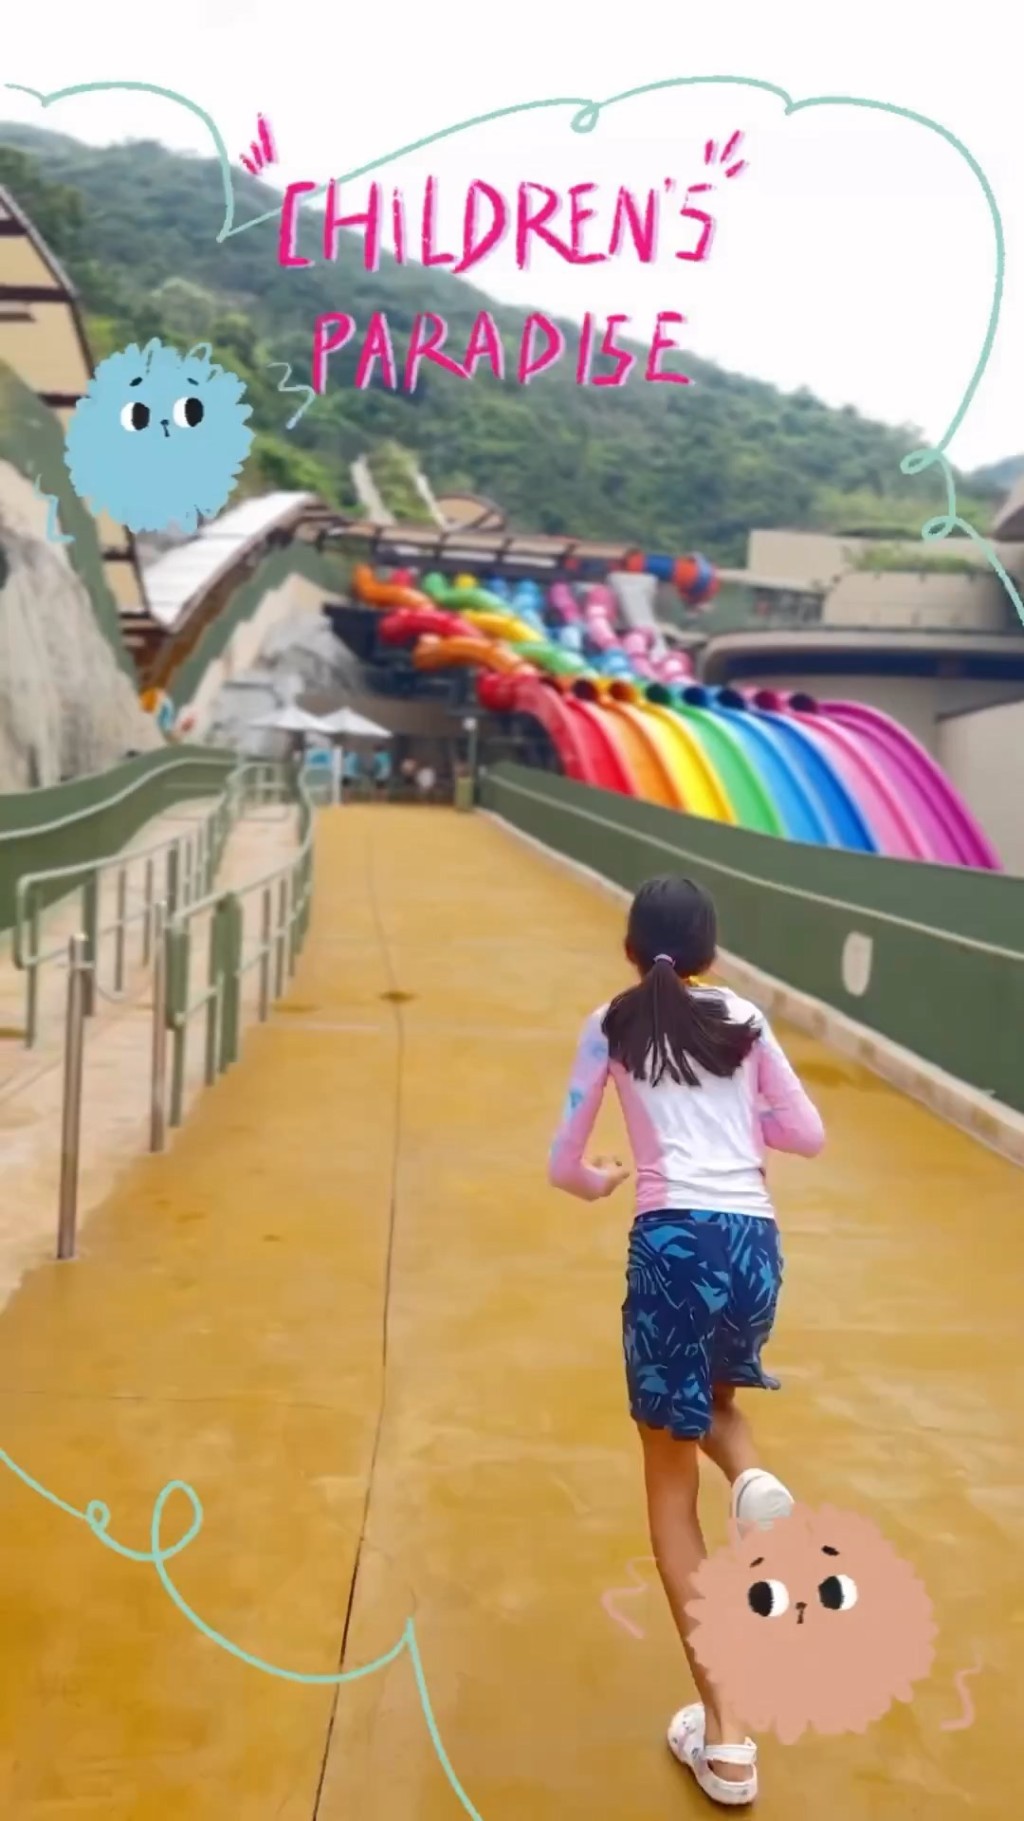 去年梁咏琪带Sofia去水上乐园玩。